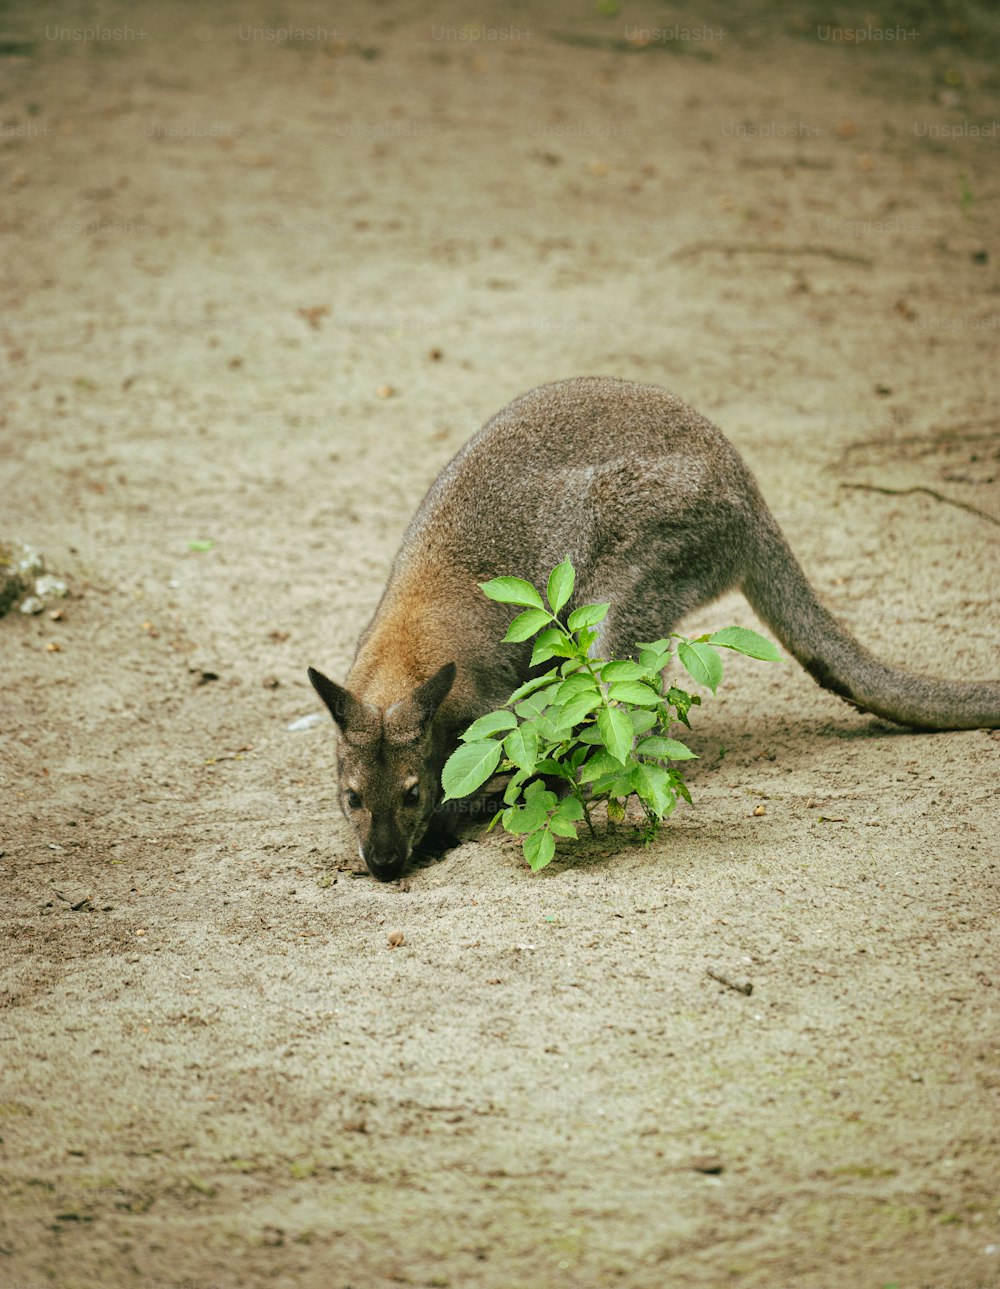 Un canguro che mangia una pianta nella sporcizia